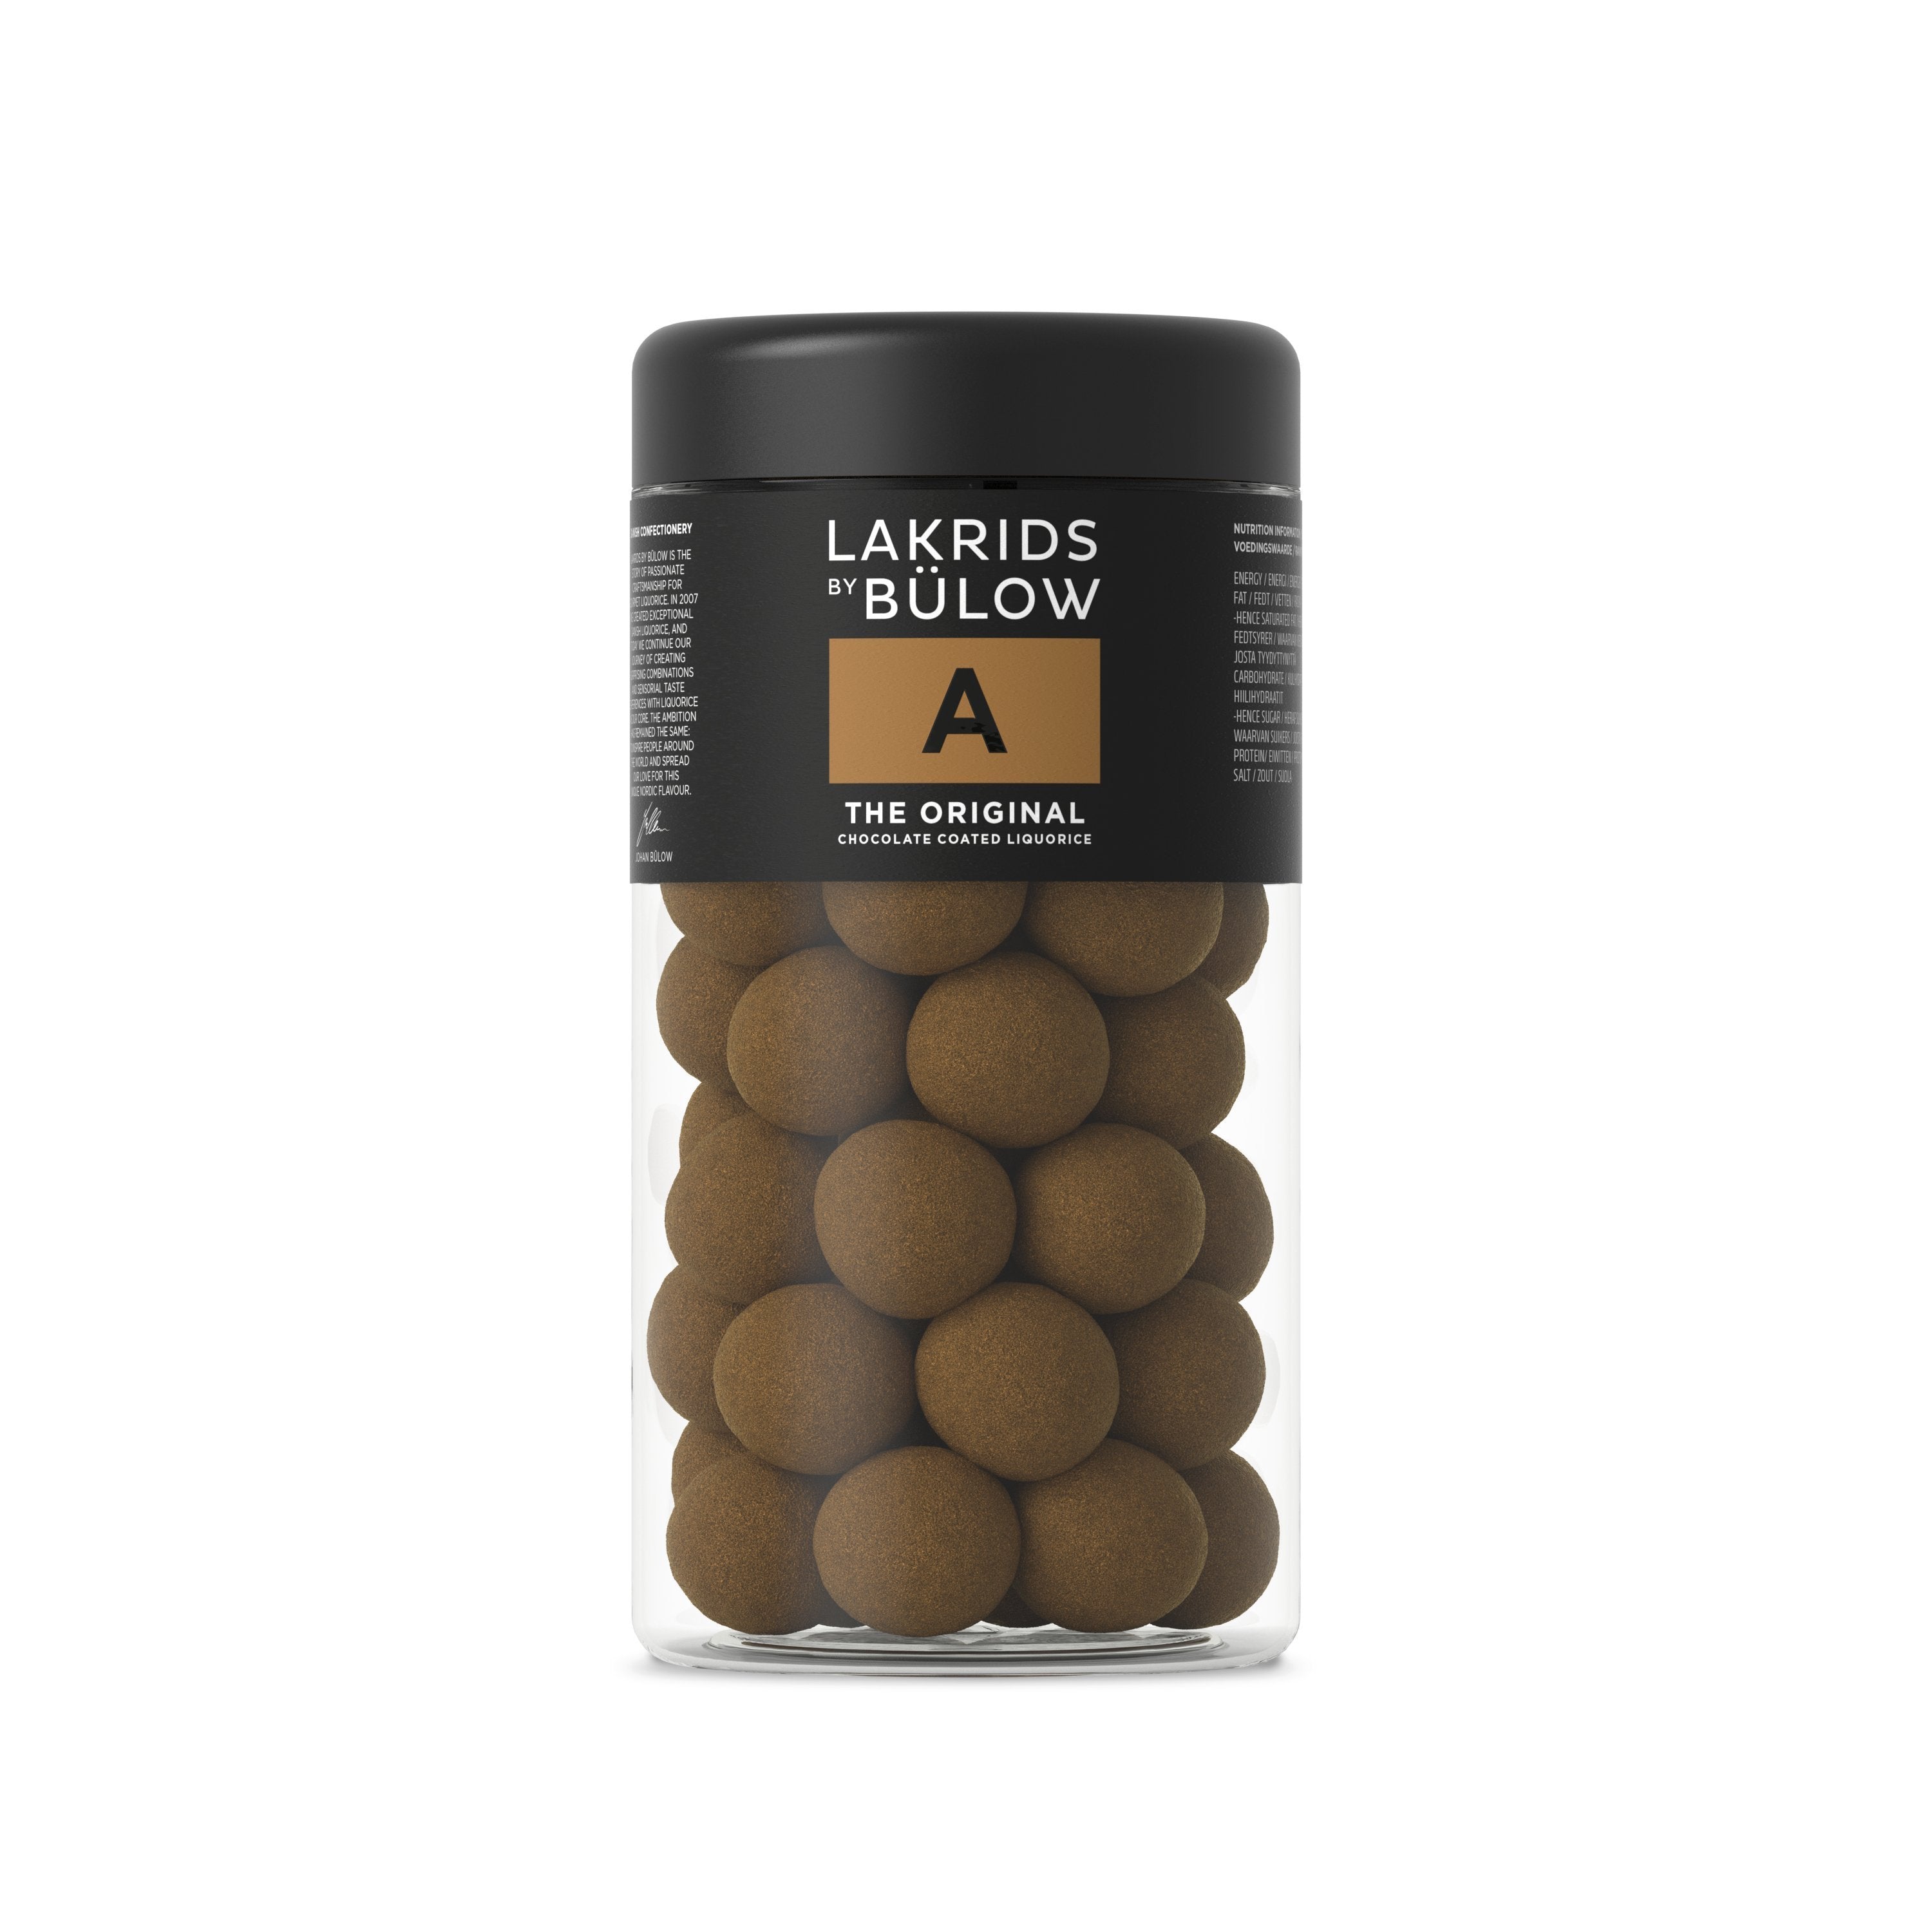 Lakrids By Bülow Black Box – A & 2, 415 Grams